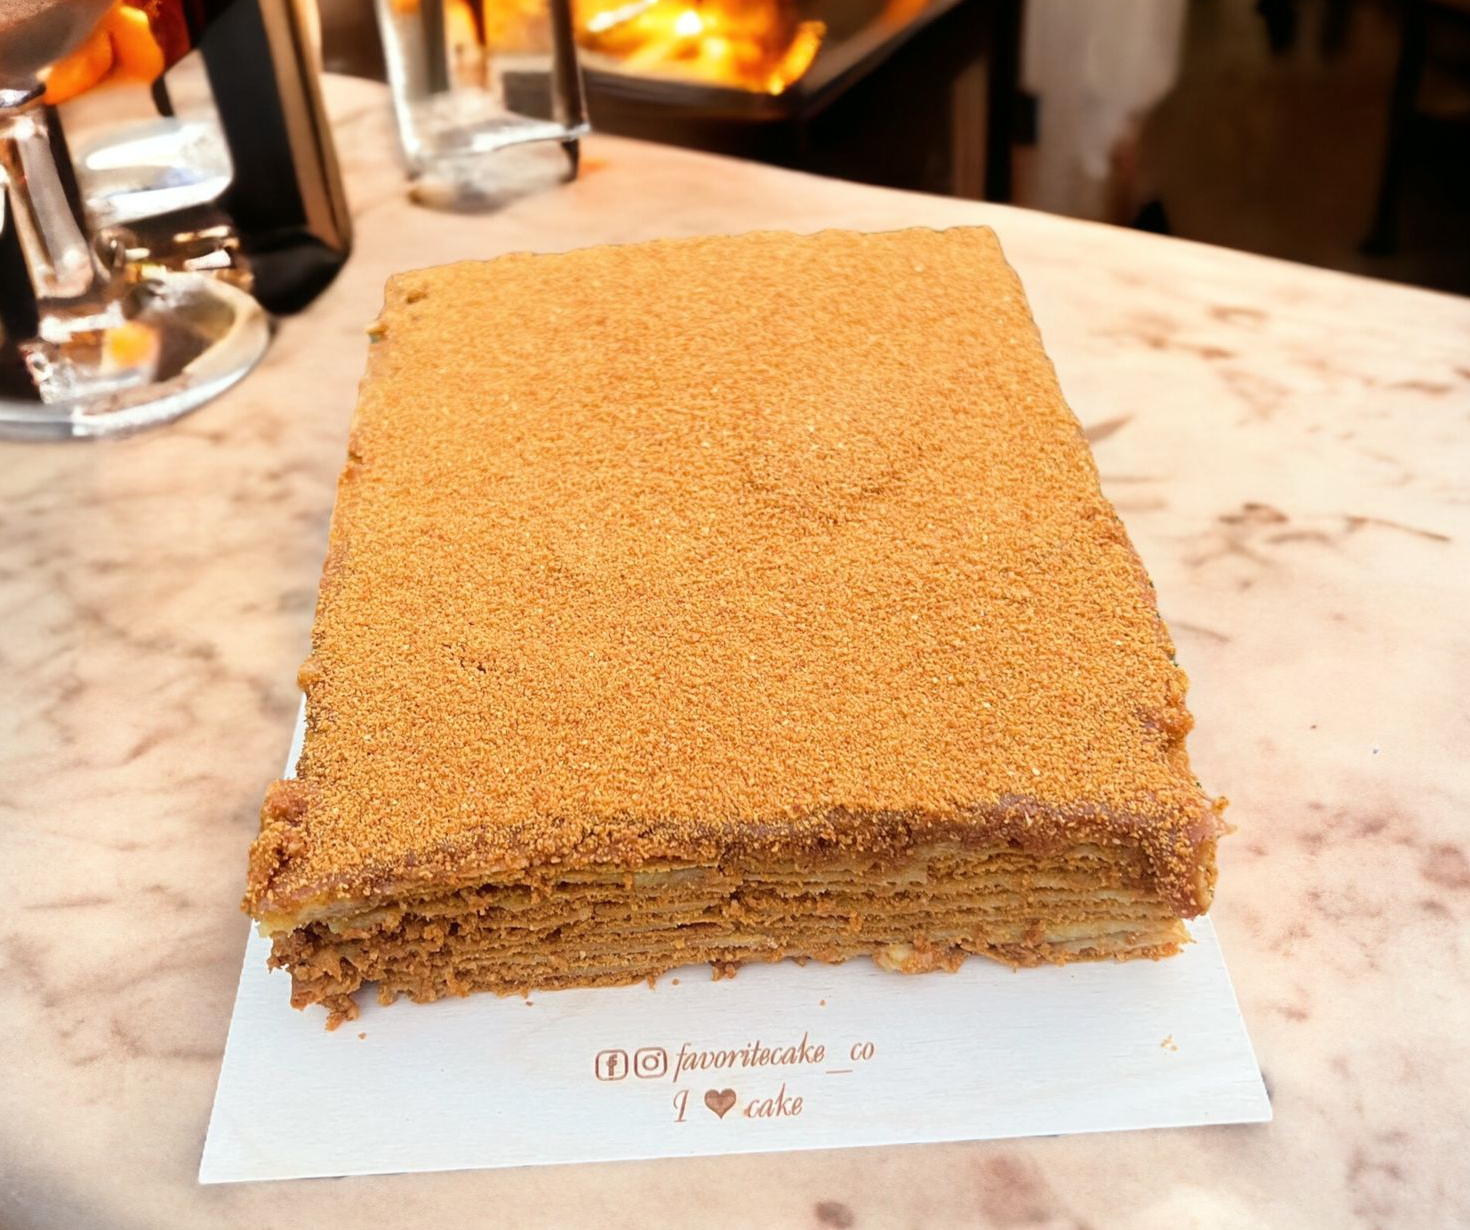 Honey cake «favoritecake»